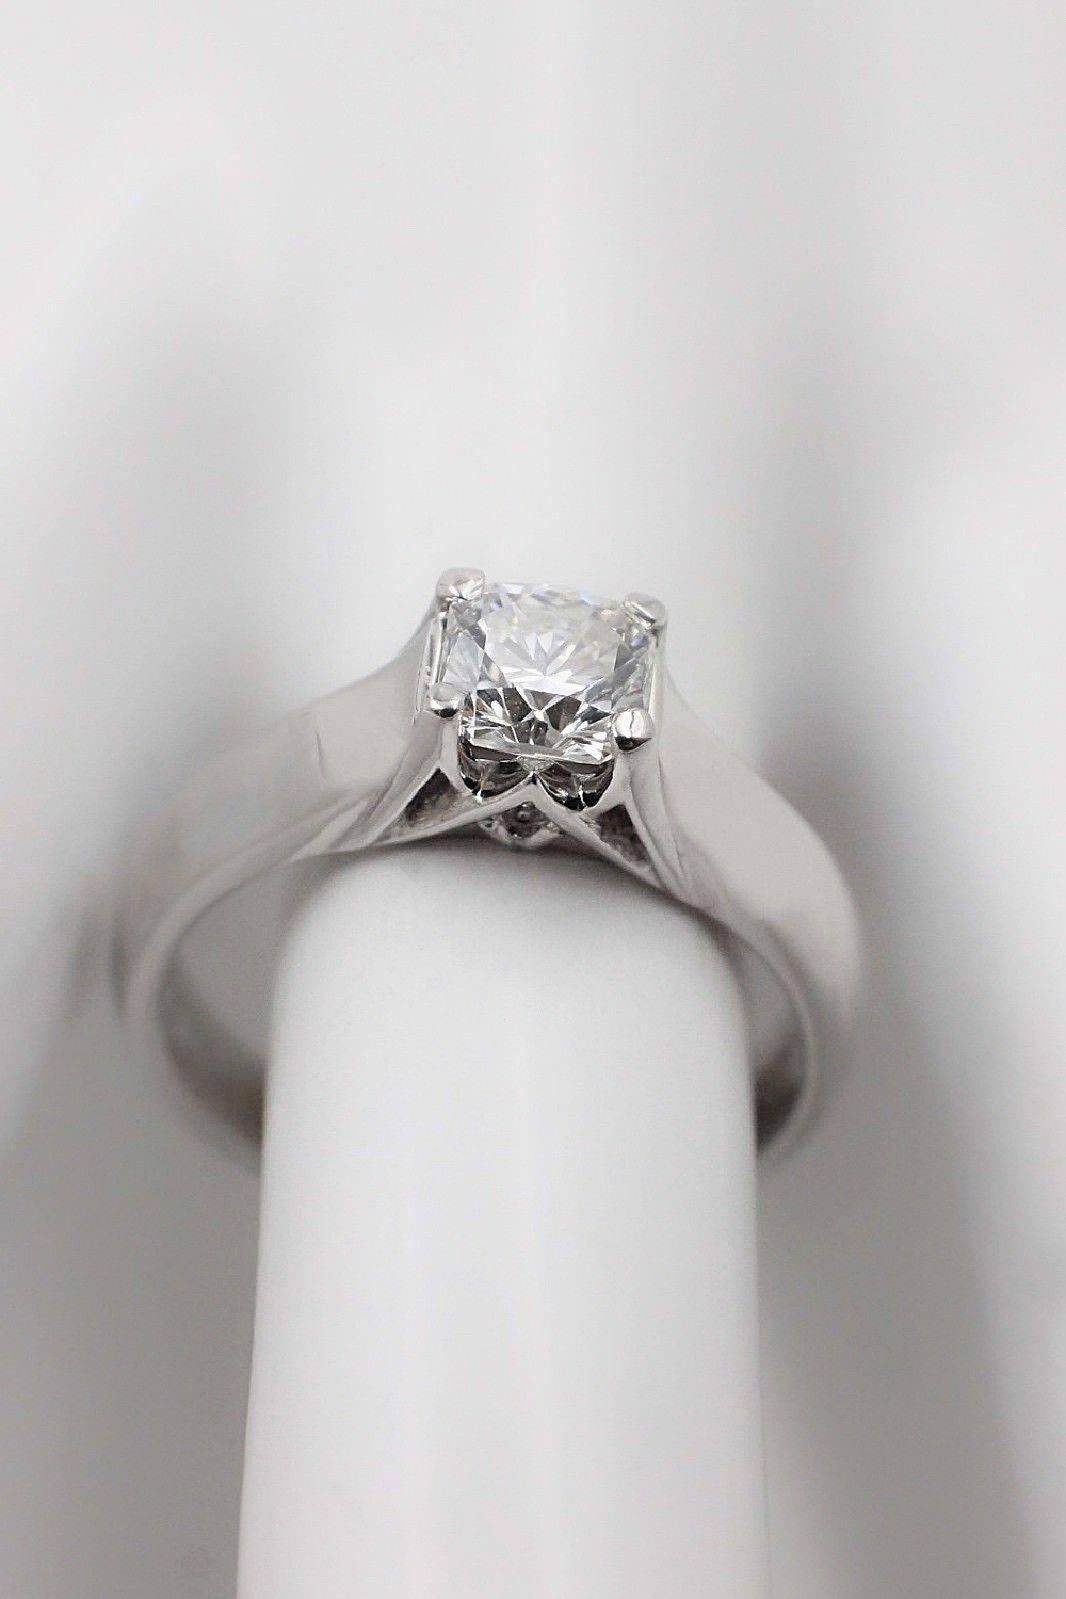 Radiant Cut Elara Radiant Diamond Engagement Solitaire Ring 0.71 Carat I VVS1 in Platinum